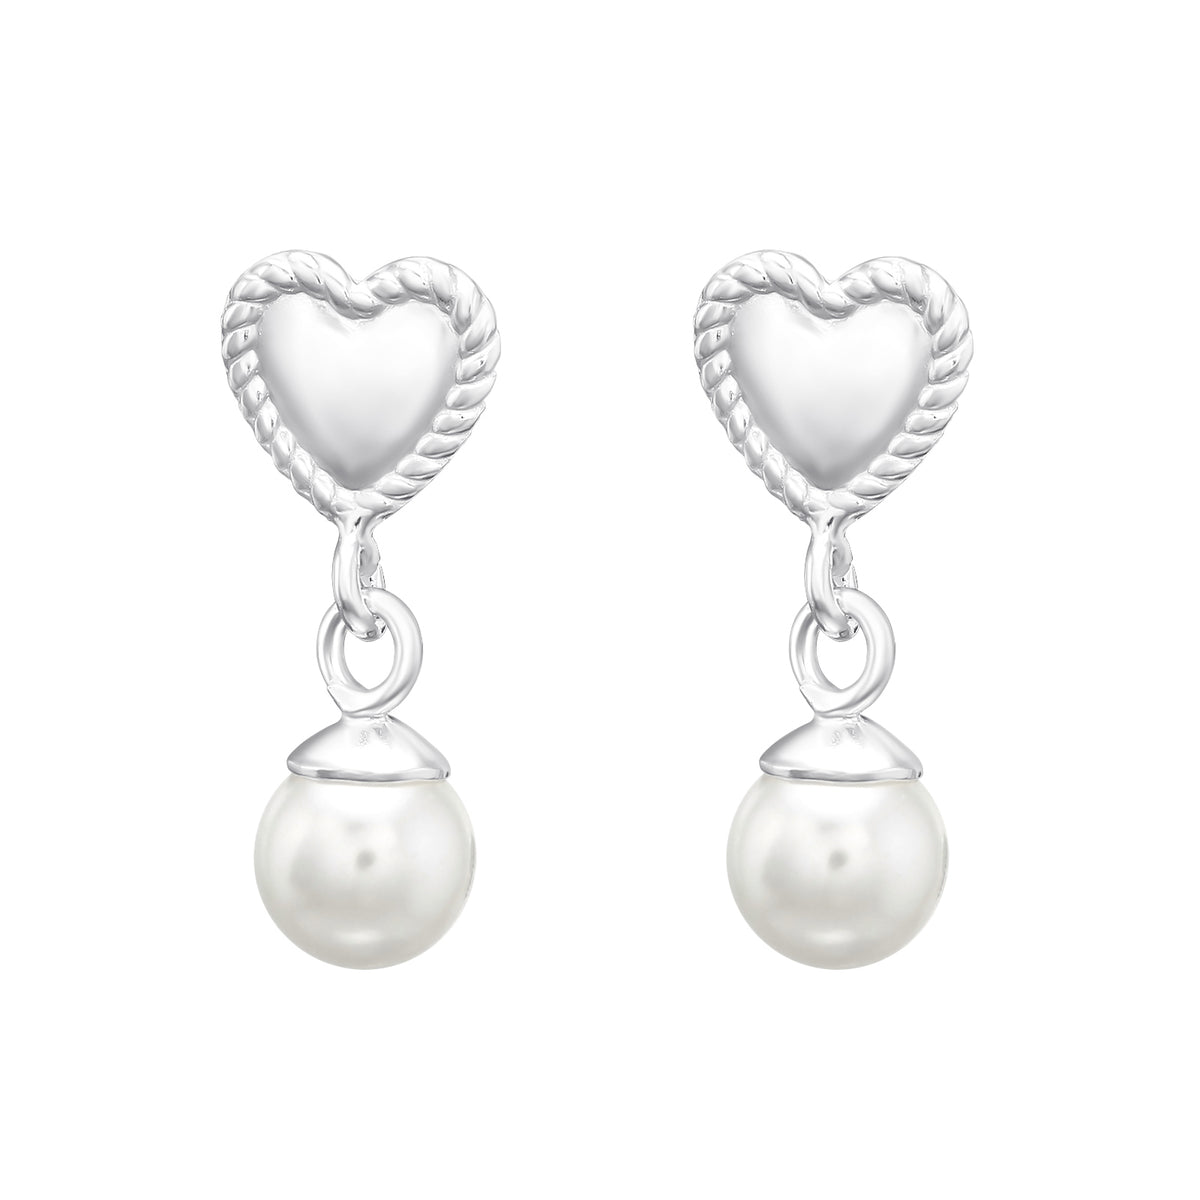 Love & Pearls, silver earrings cercei perle < cadouri pentru ea < cadouri fete < cadouri mame < cadouri prietena < cadouri majorat < cadouri bff < cadou aniversare < cadouri iubita < cercei argint < idei de cadouri Maison la Stephanie   